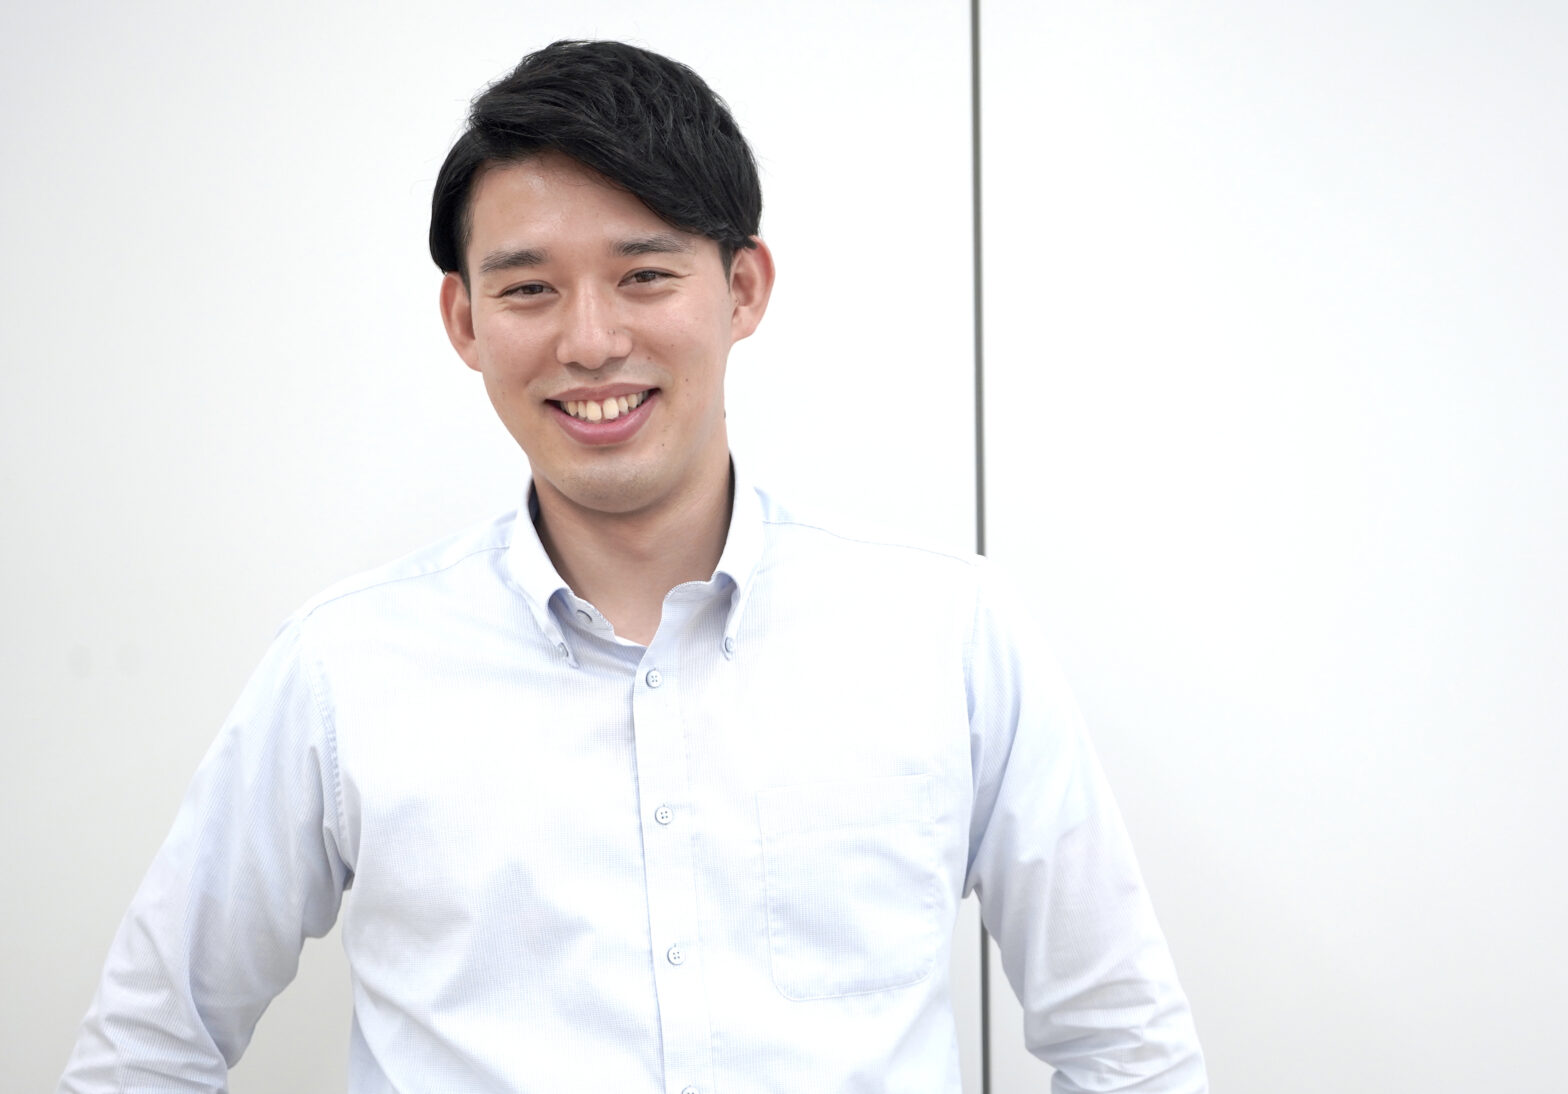 【リアルマーケティング】日本一顧客成功の機会を創出するチーム